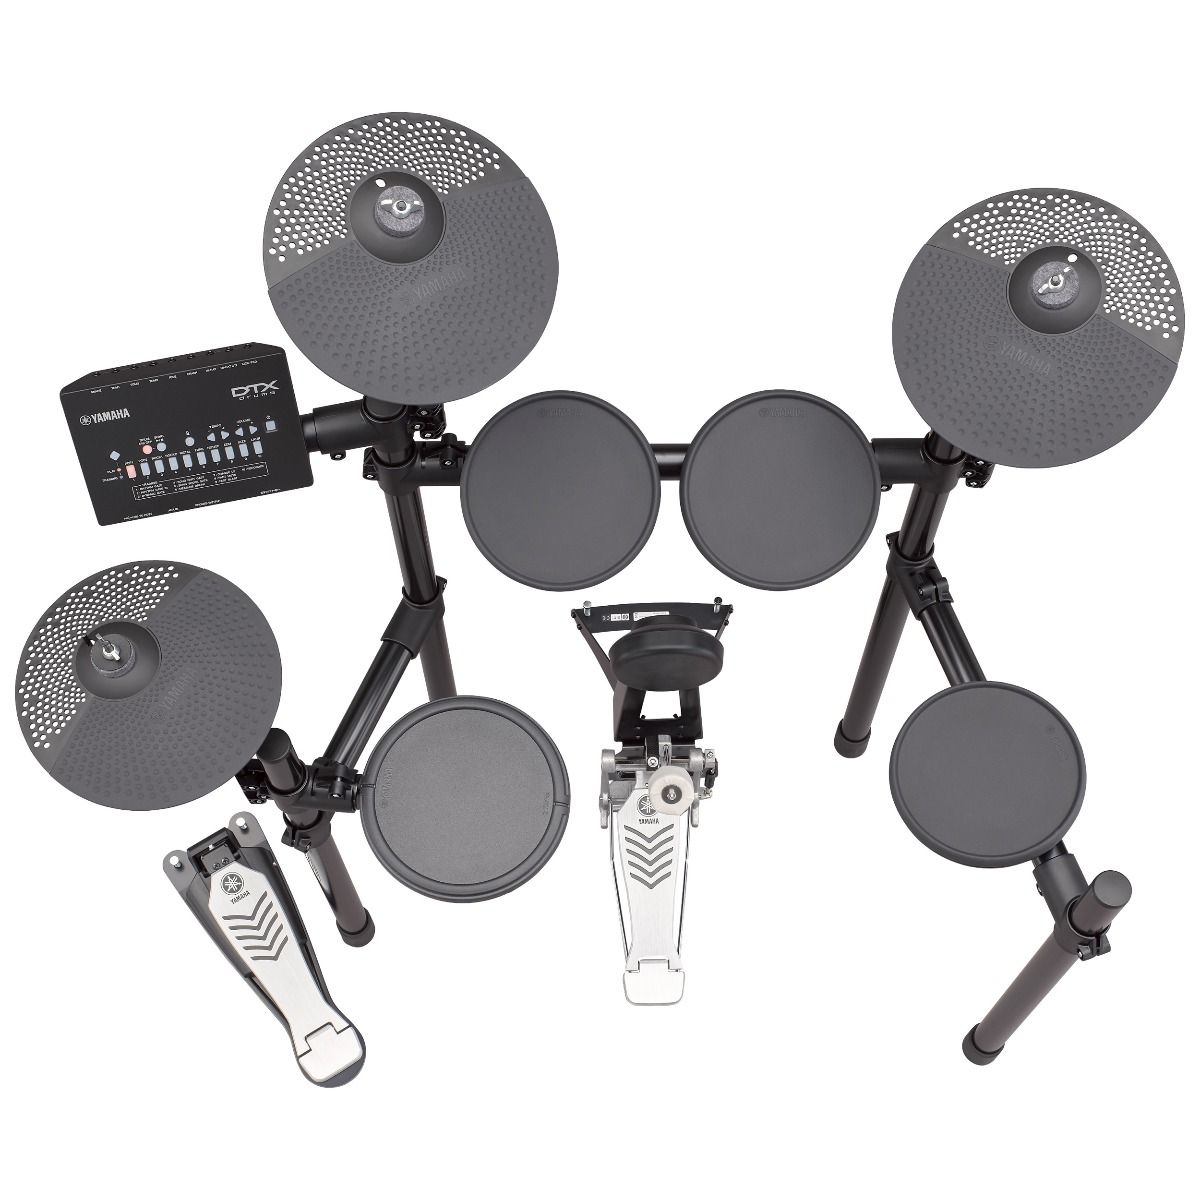 yamaha electronic drum sets